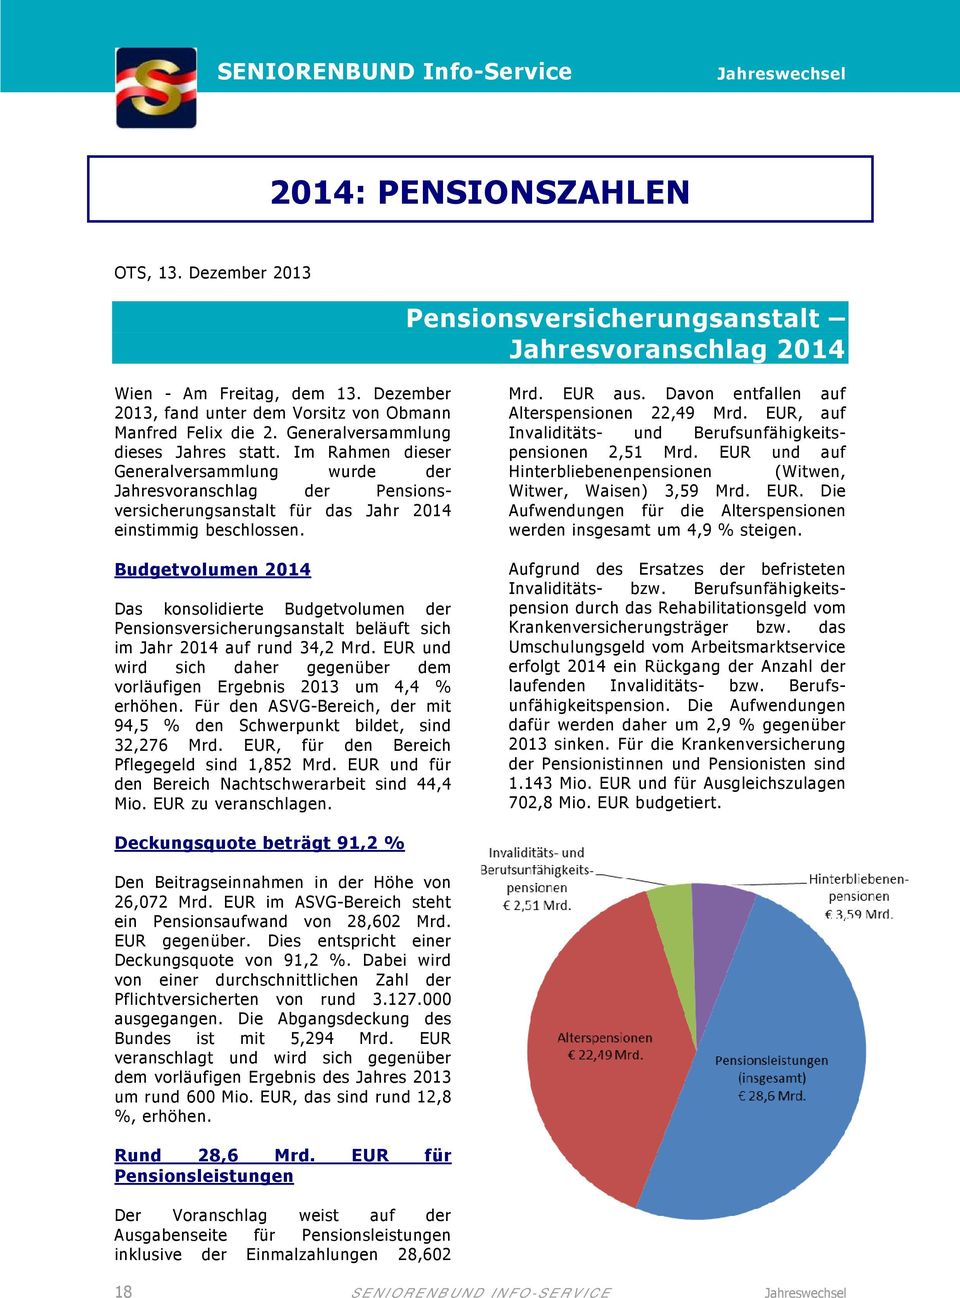 Im Rahmen dieser Generalversammlung wurde der Jahresvoranschlag der Pensionsversicherungsanstalt für das Jahr 2014 einstimmig beschlossen.